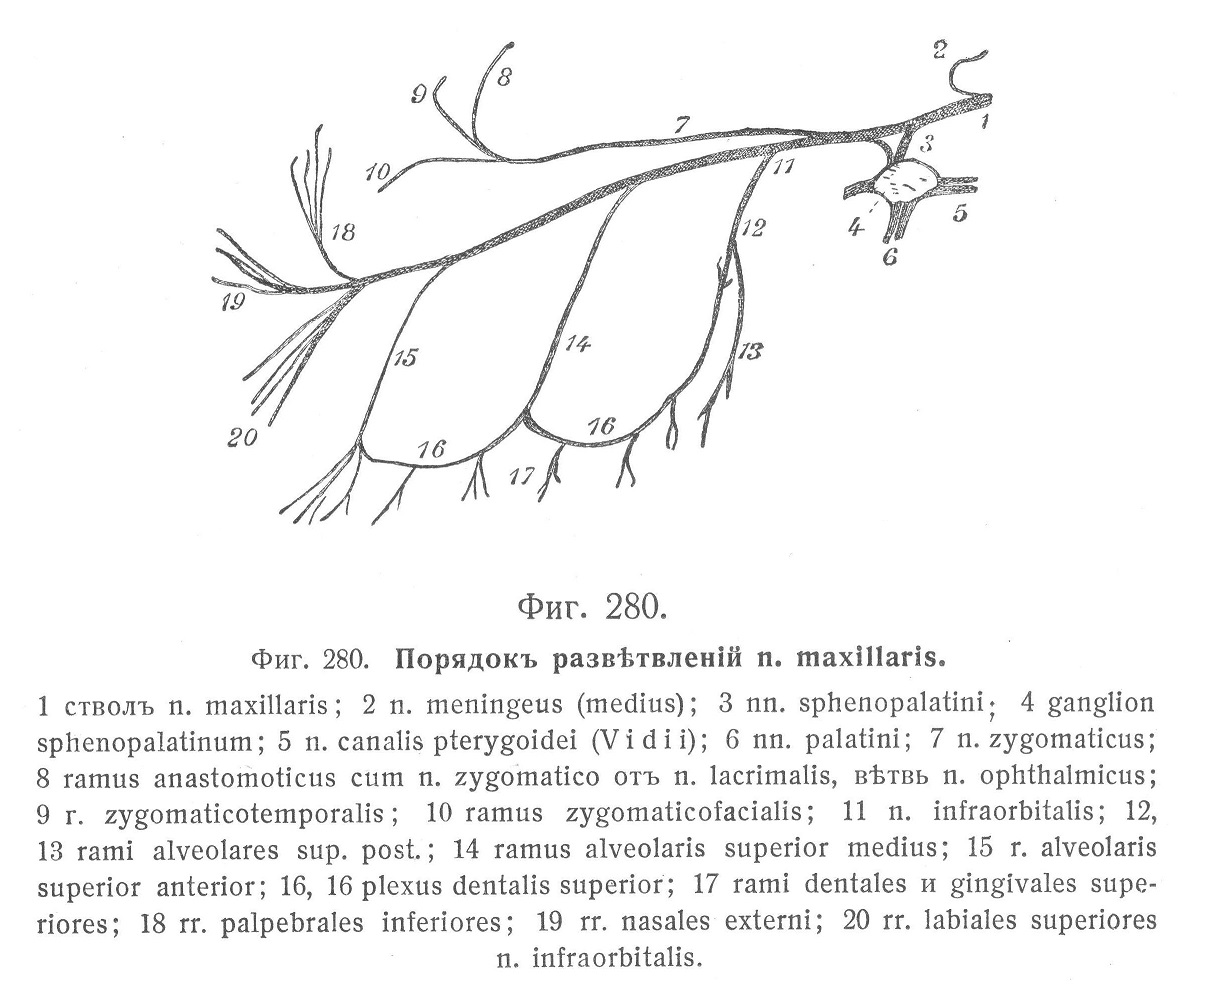 Порядокъ развѣтвленій n. maxillaris.